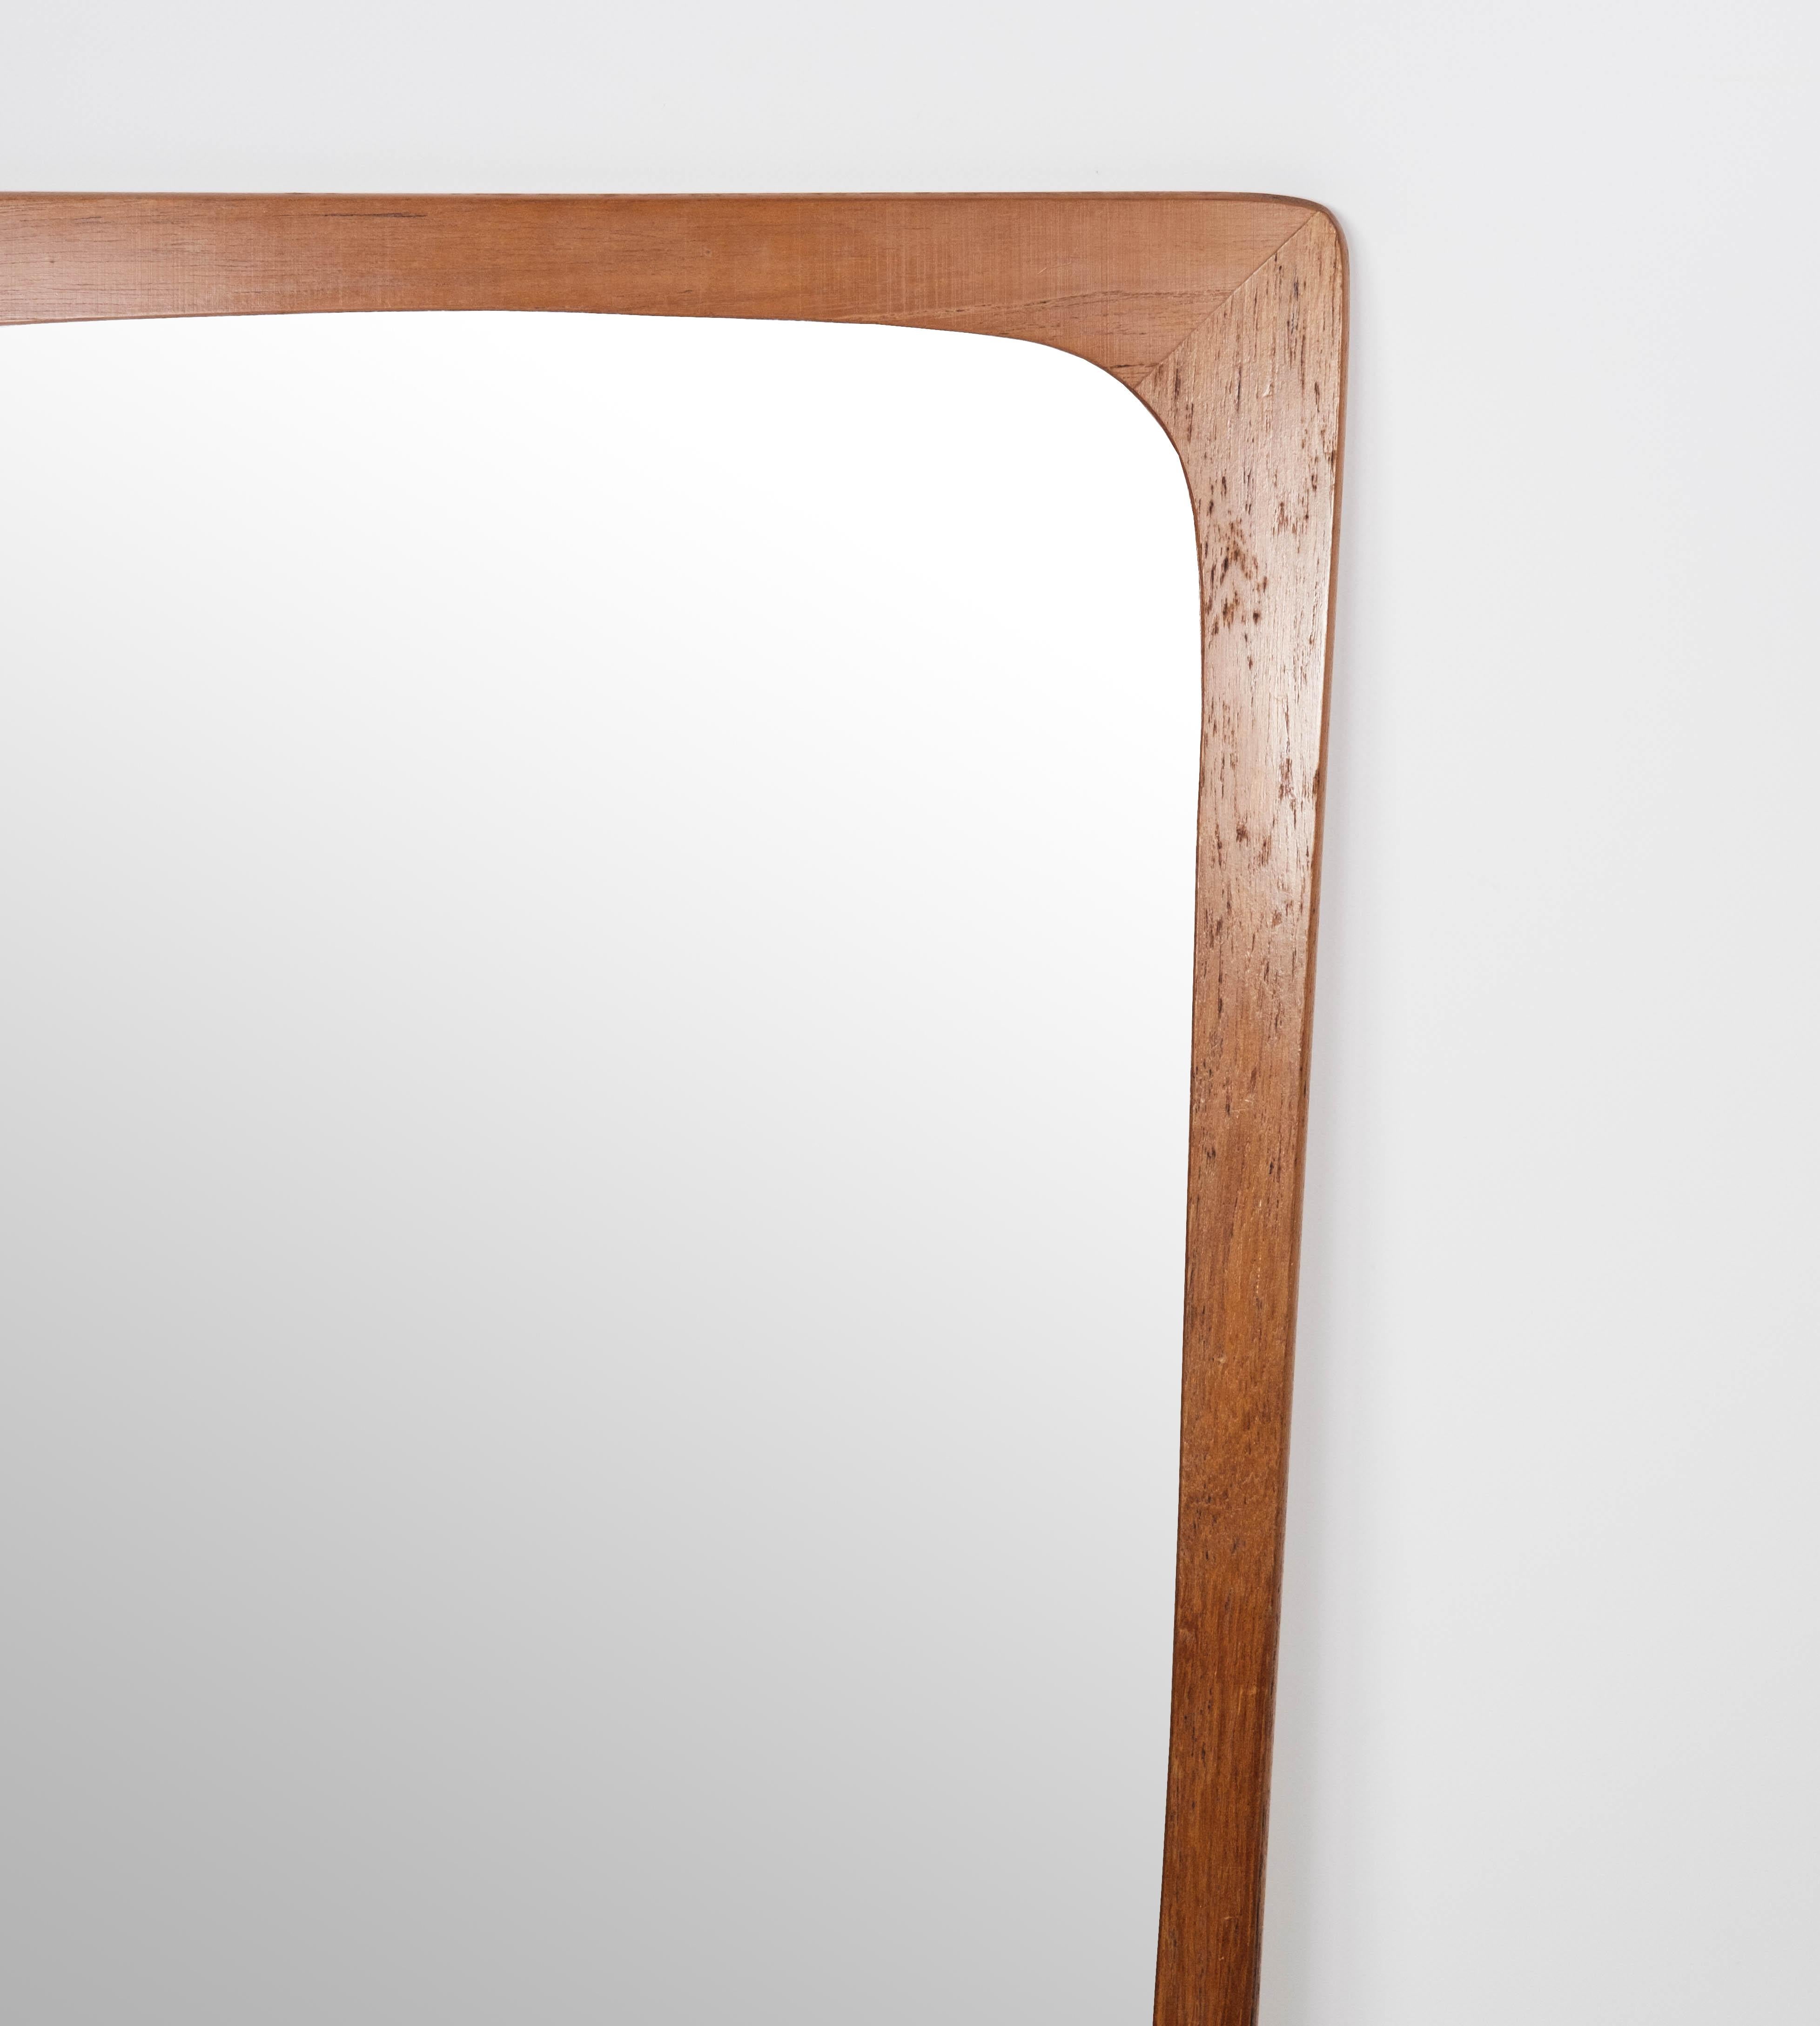 Ce miroir en teck avec étagère intégrée incarne l'élégance intemporelle du design danois des années 1960. Son design épuré et fonctionnel en fait une pièce polyvalente qui allie harmonieusement style et praticité.

Fabriqué en teck, réputé pour ses